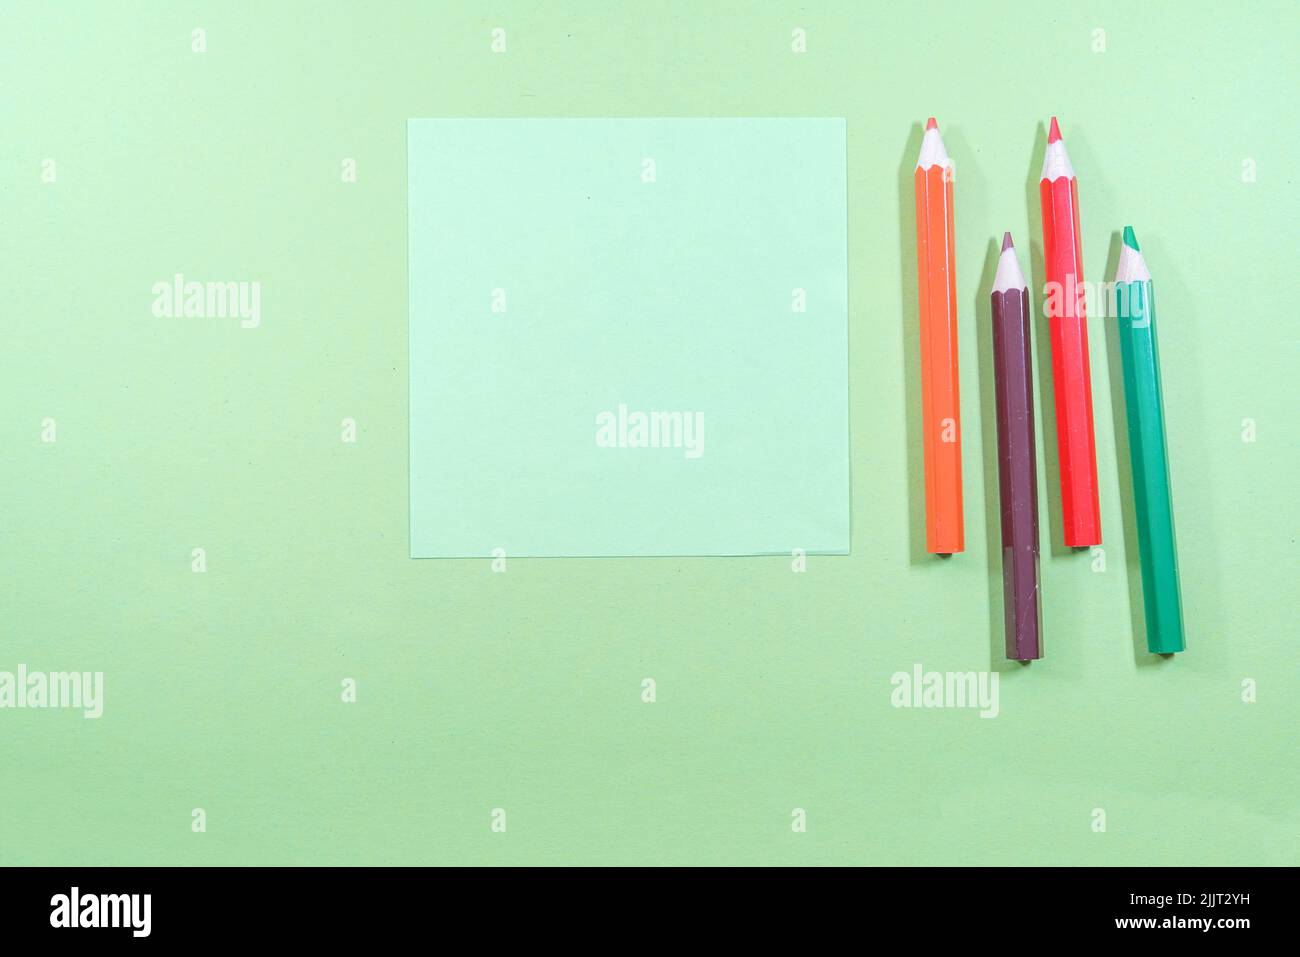 Eine Draufsicht auf Minze-Haftnotizen mit Copyspace neben bunten Bleistiften auf hellgrünem Hintergrund Stockfoto